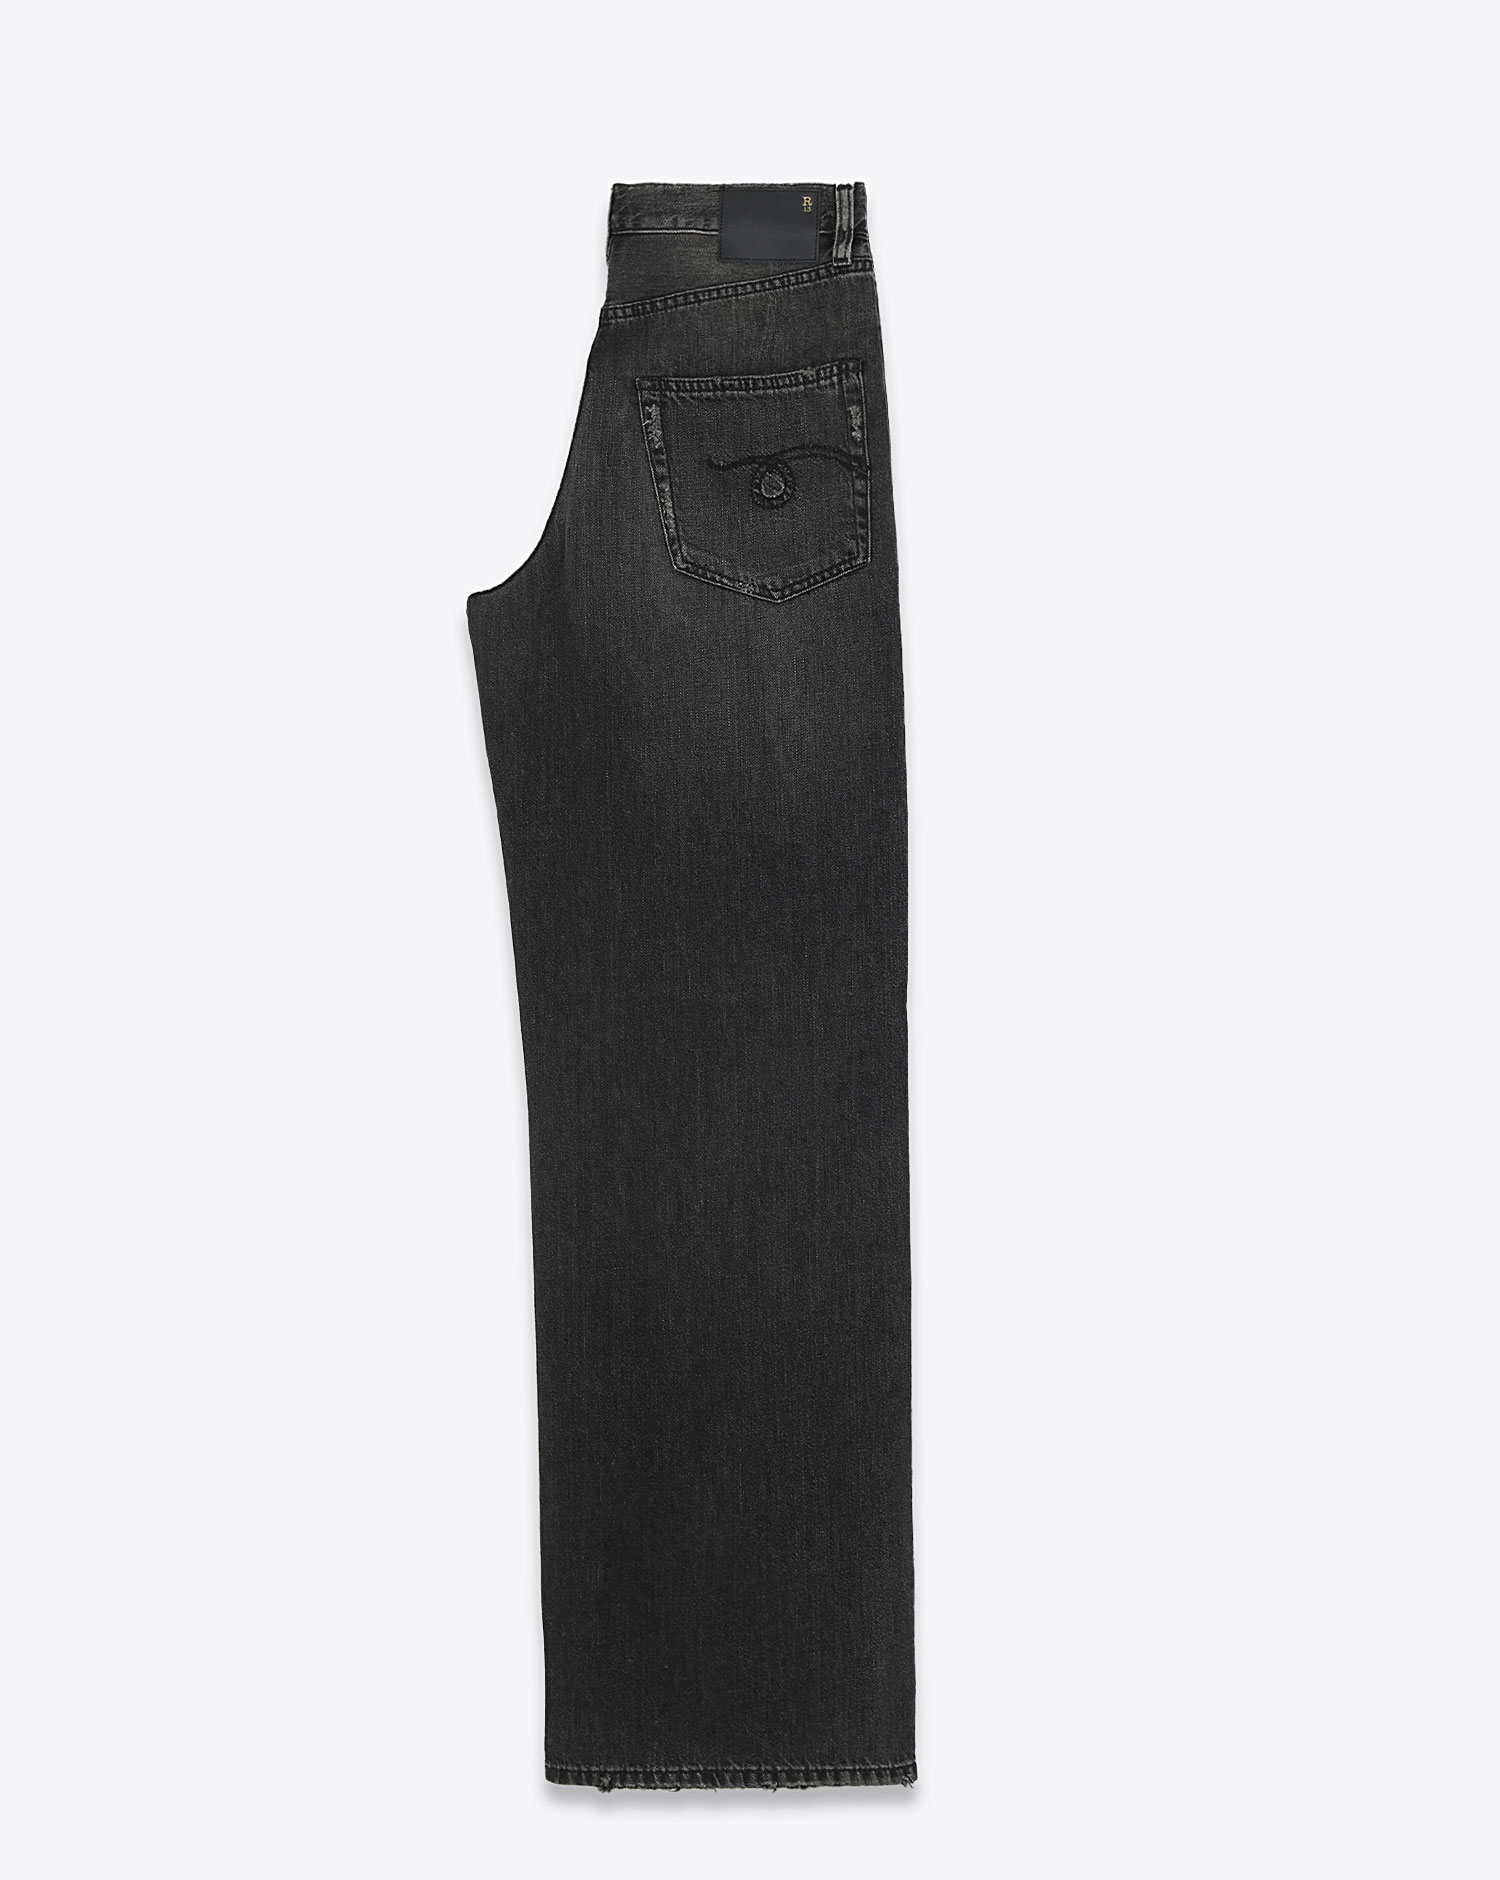 Jeans Damon Pleated Wide Leg R13 Denim 